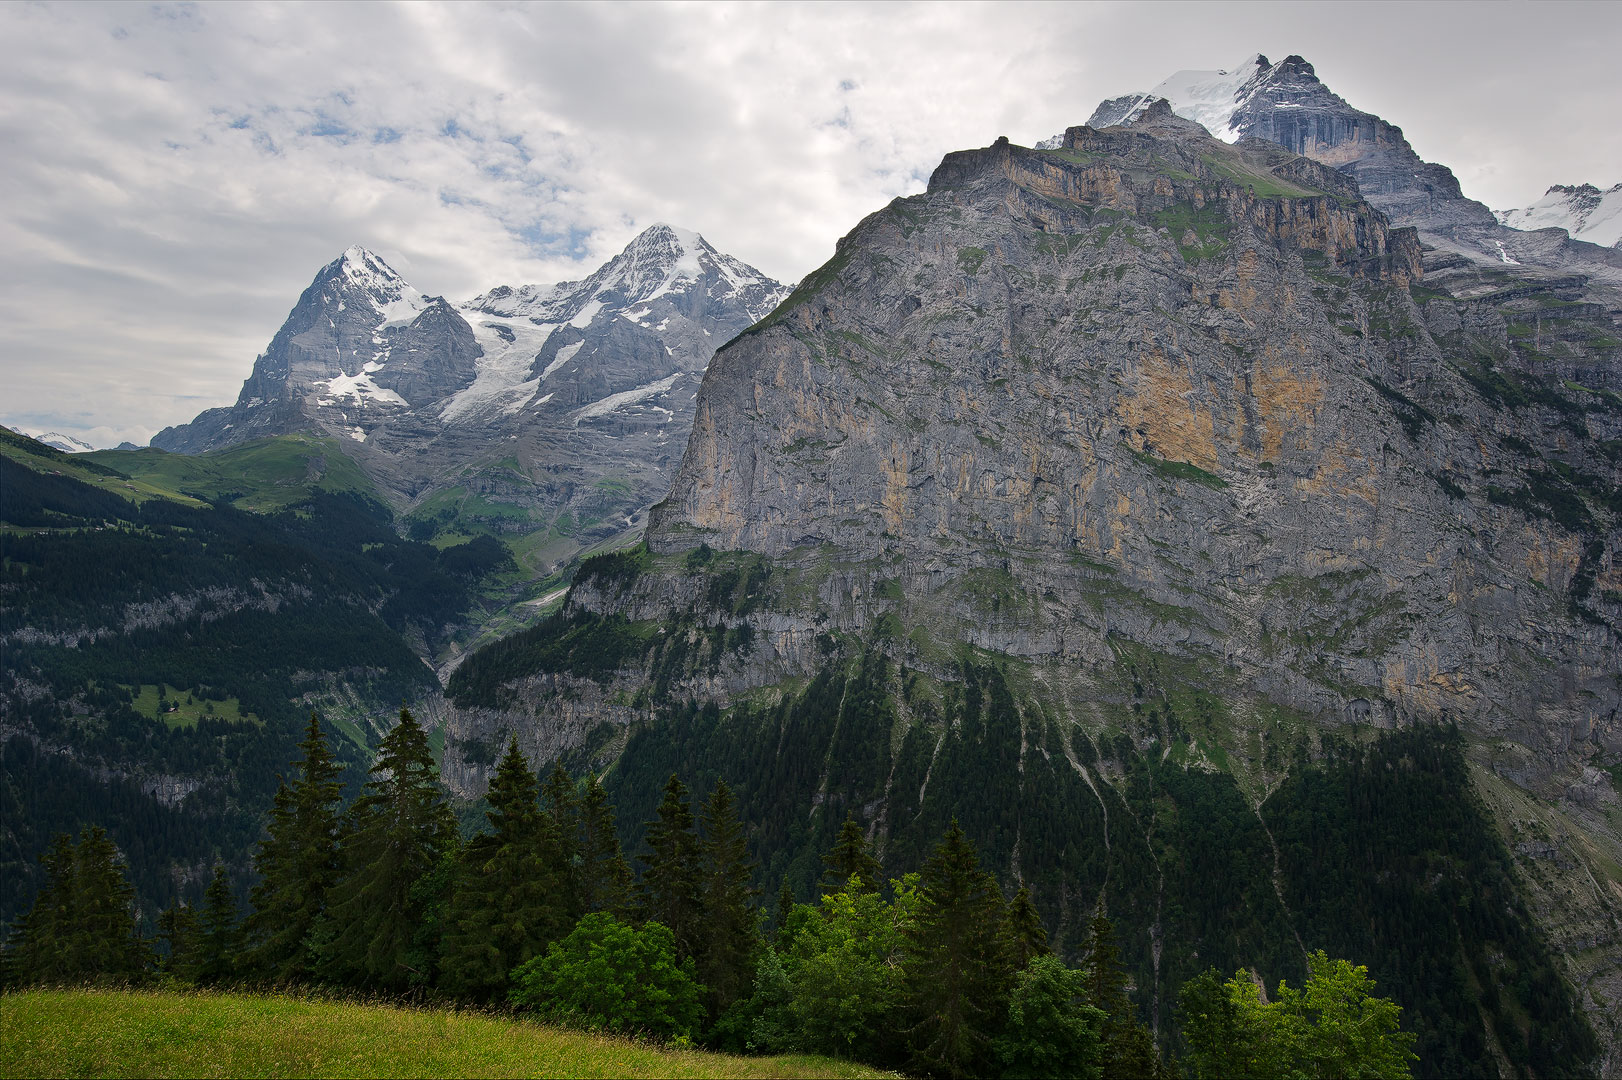 Switzerland, Alps, Schilthorn, Eiger, MÃ¶nch, Grindelwald, Jungfrau, Kleine Scheidegg, Swiss Alps, Interlaken, Schynige Platte...